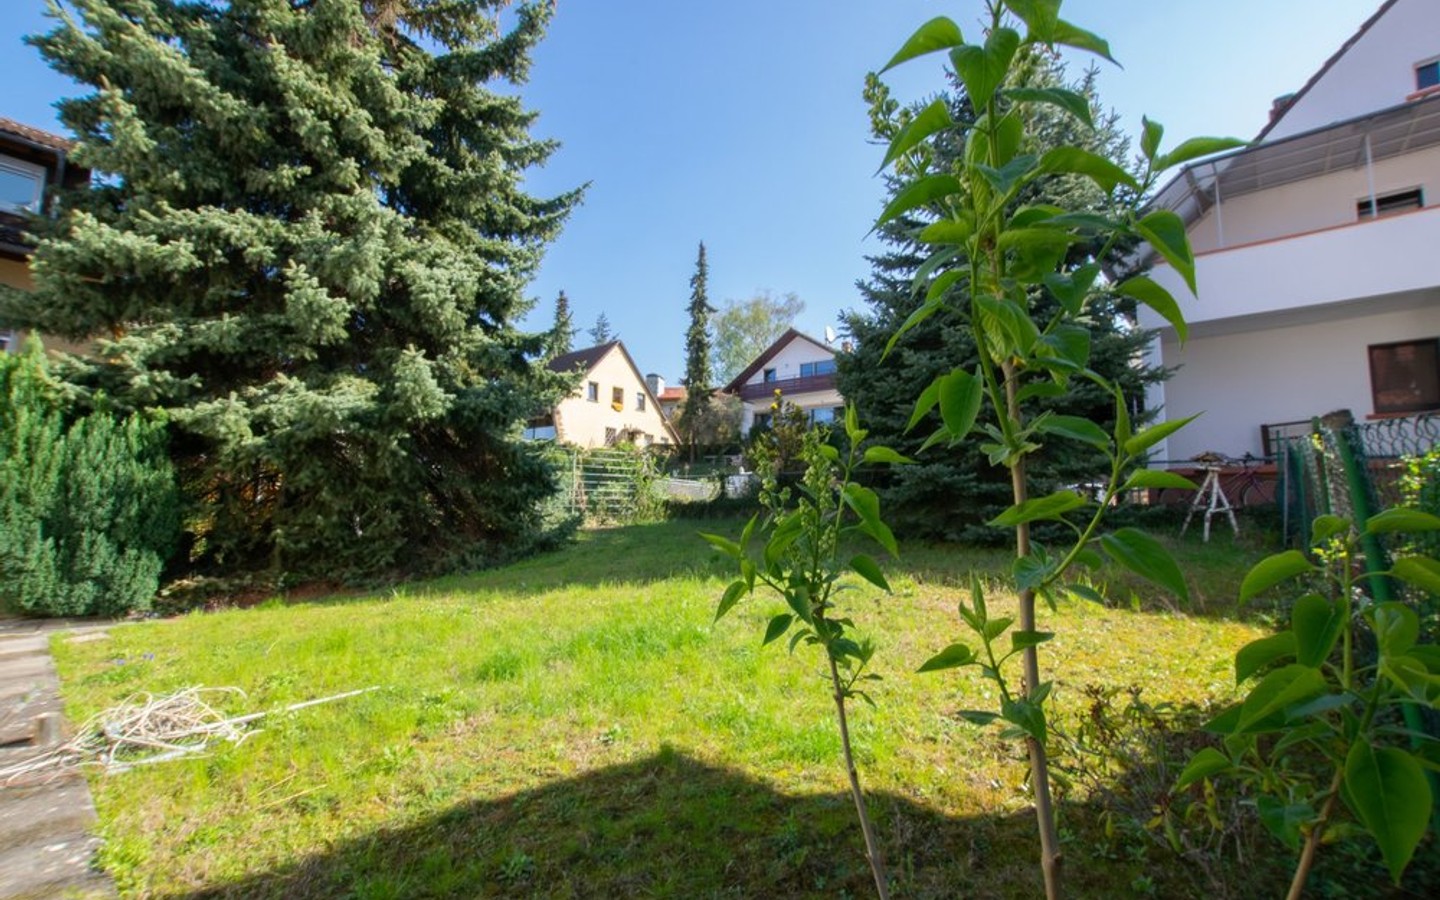 Garten - HD-Leimen: Charmantes Einfamilienhaus mit Garten in bevorzugter Wohnlage